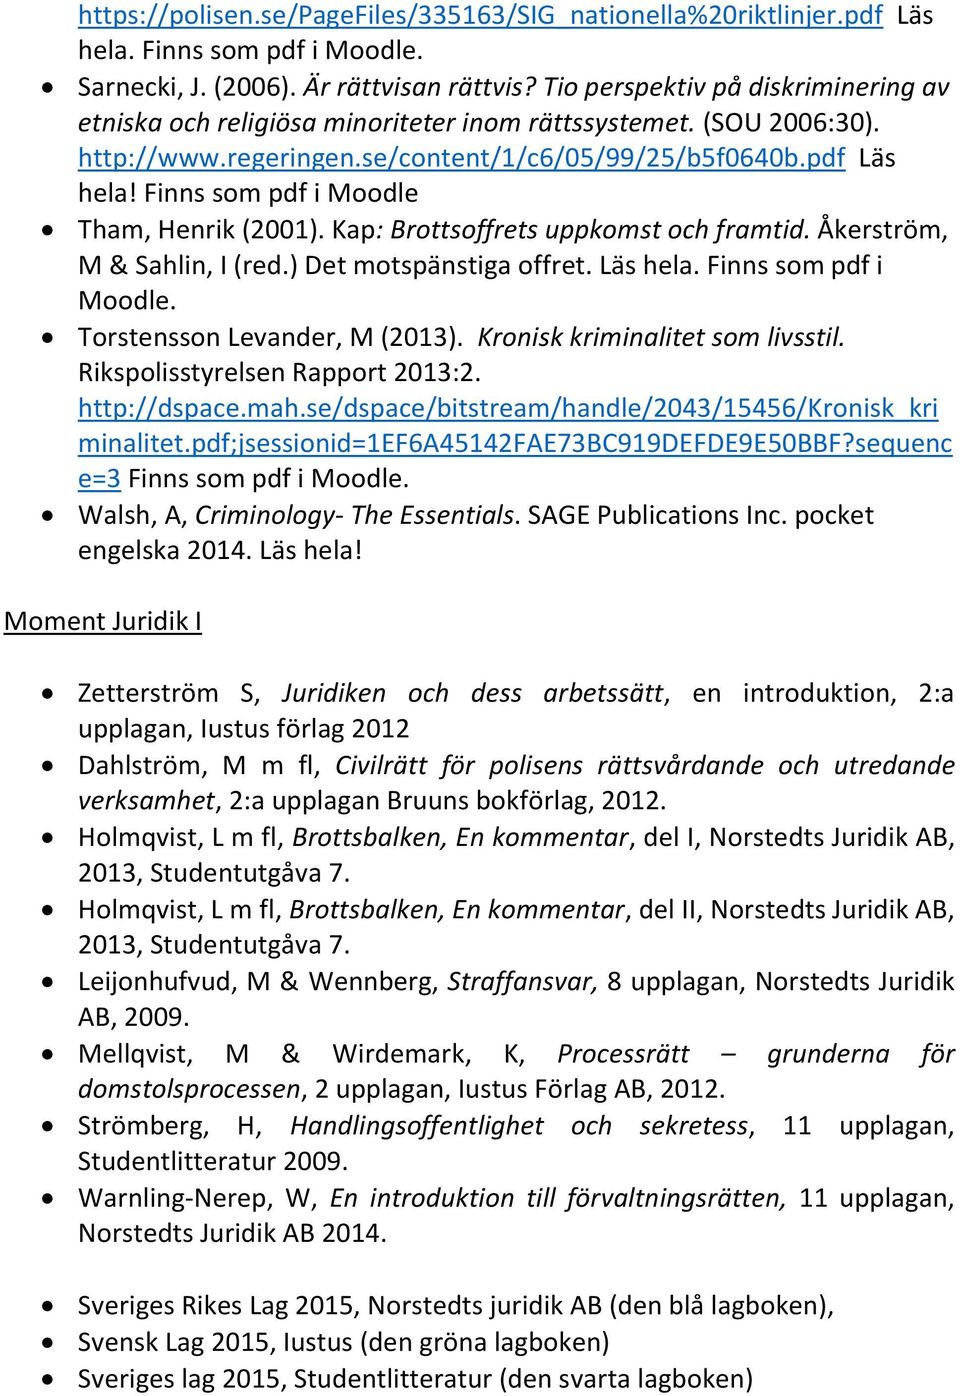 Finns som pdf i Moodle Tham, Henrik (2001). Kap: Brottsoffrets uppkomst och framtid. Åkerström, M & Sahlin, I (red.) Det motspänstiga offret. Läs hela. Finns som pdf i Moodle.